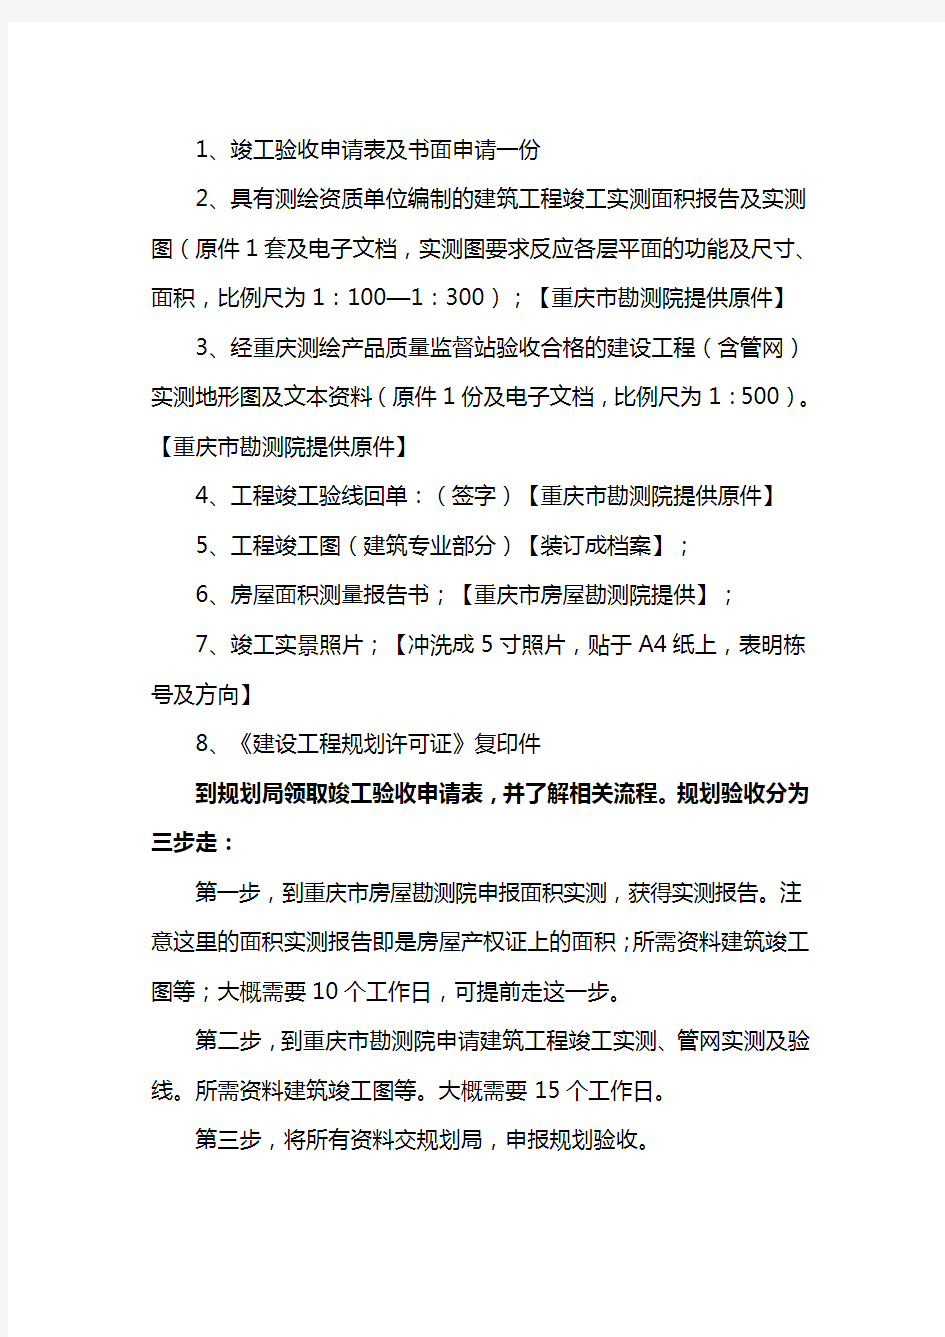 重庆市房地产开发项目竣工验收工作指南